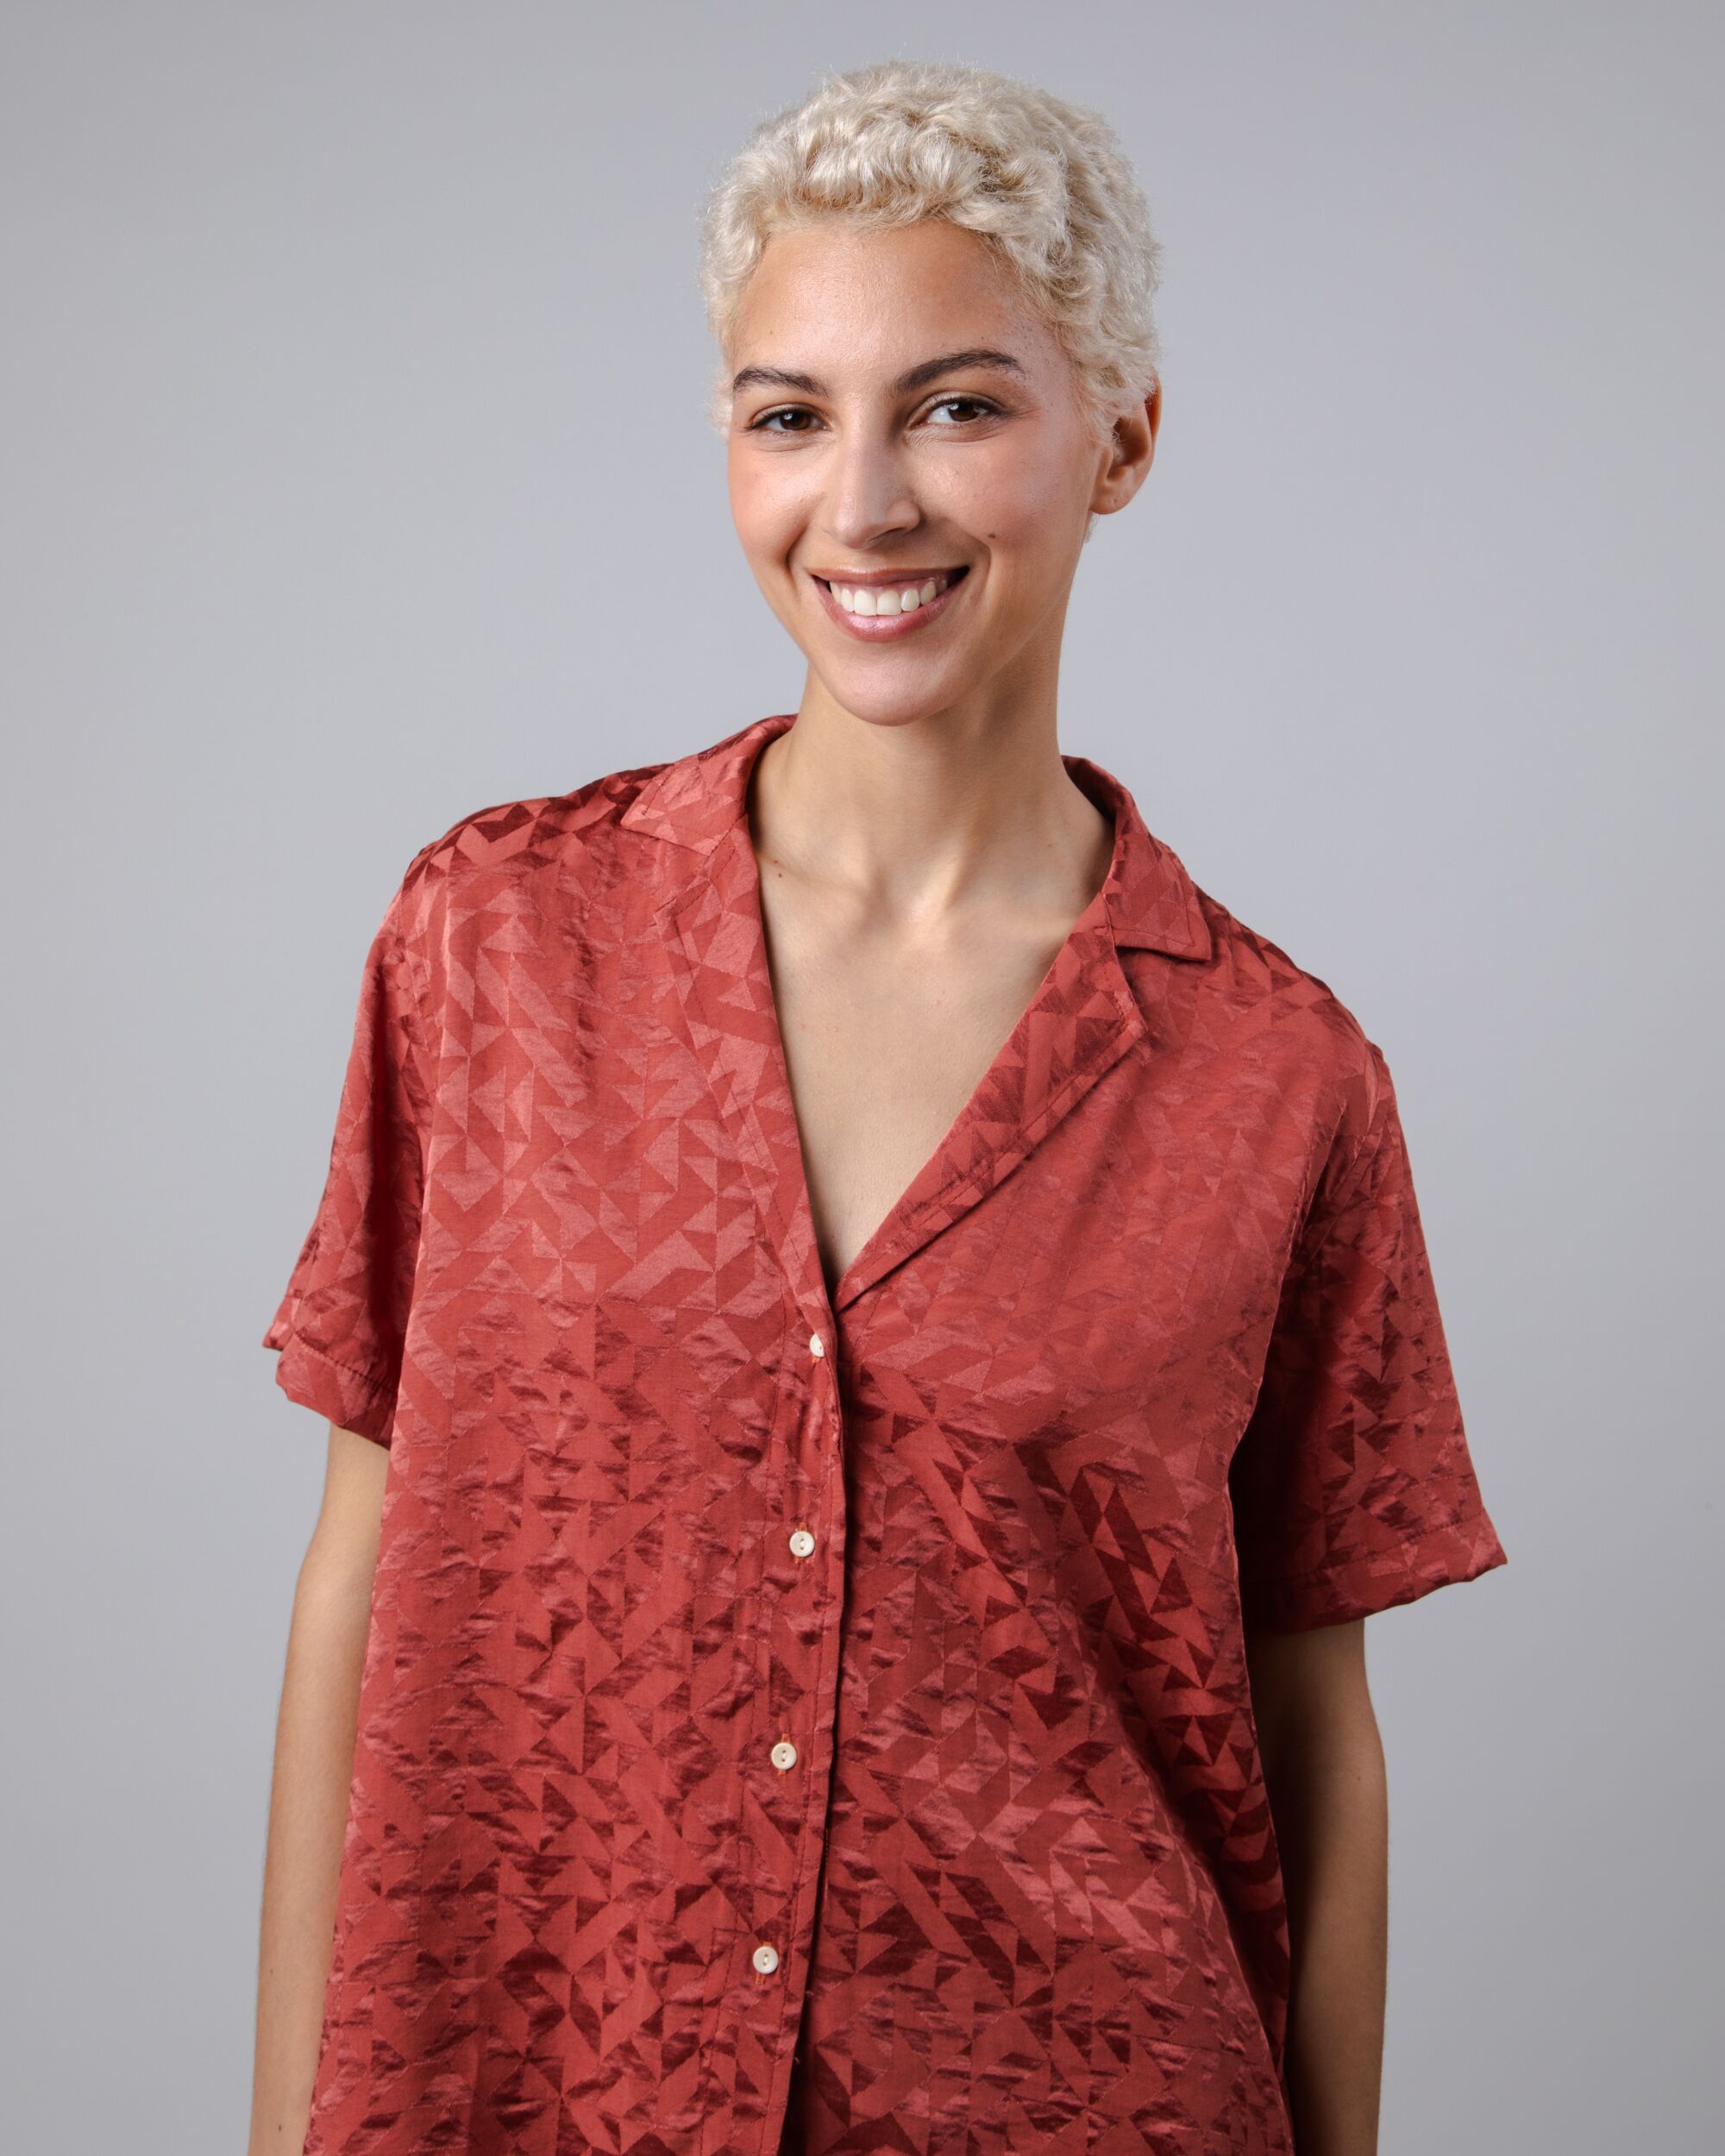 Chemisier rouge à manches courtes Jacquard Aloha en polyester durable de Brava Fabrics